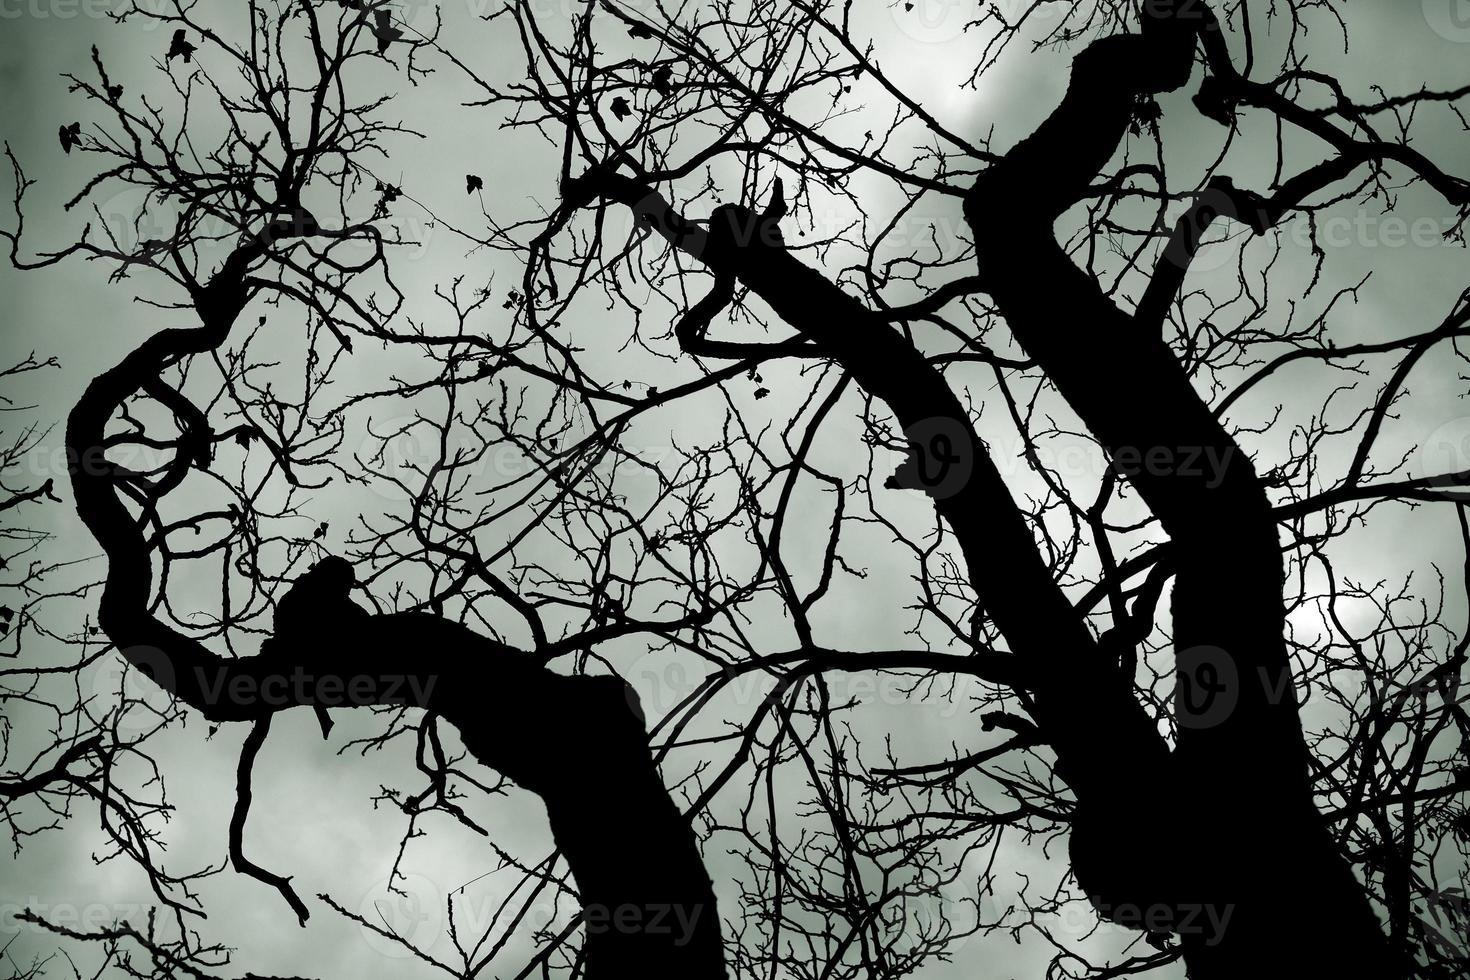 silhouette albero nudo contro il cielo tempestoso foto